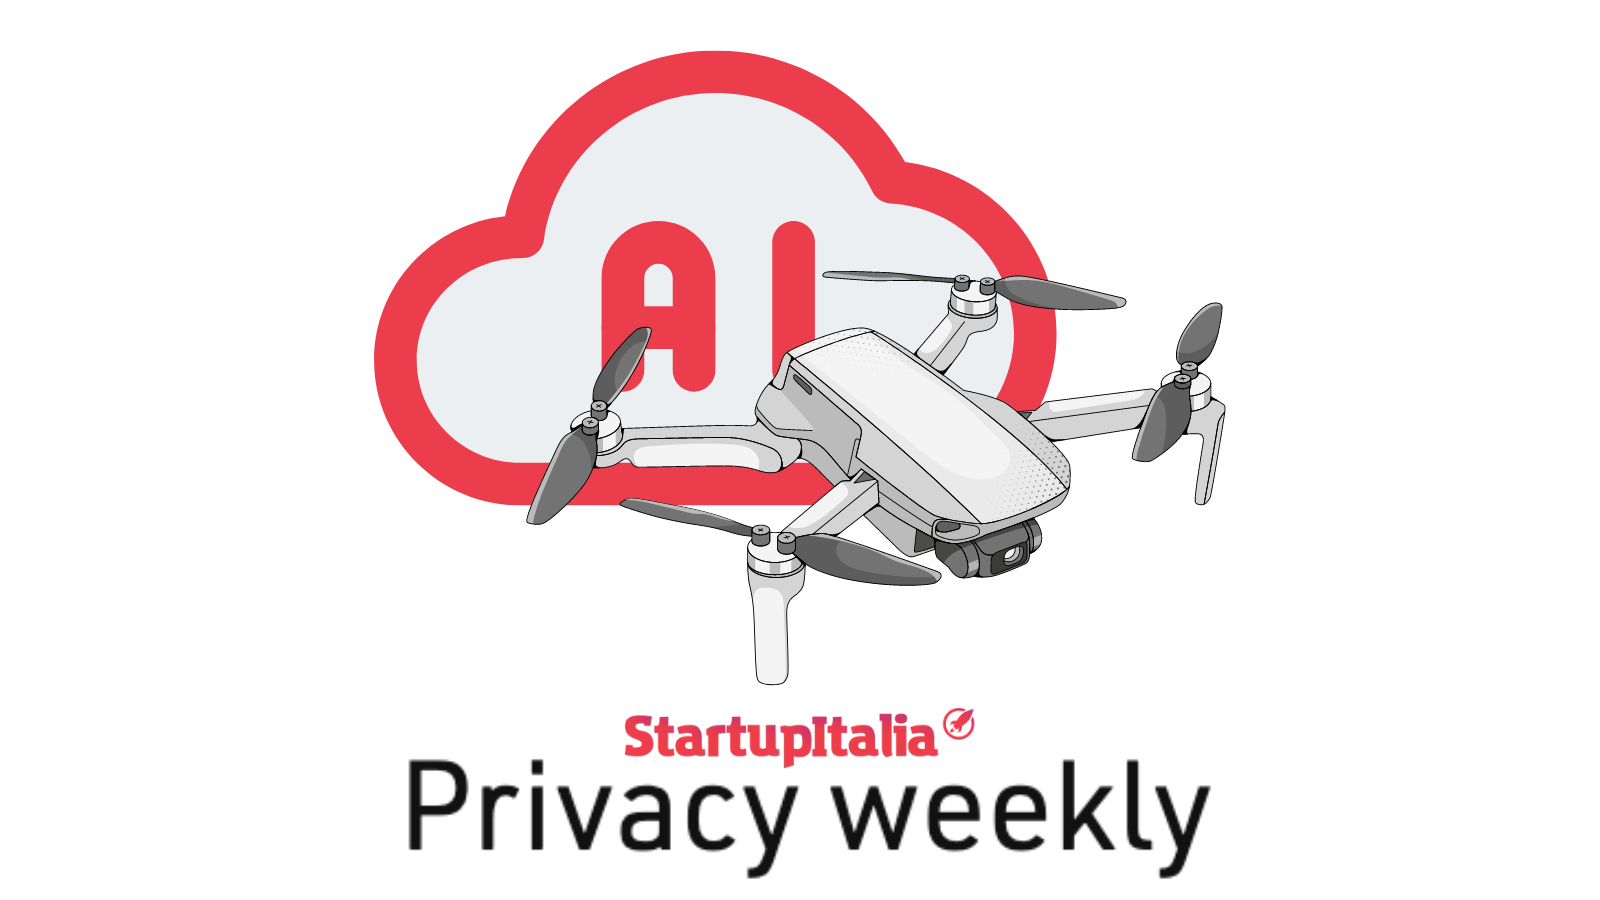 Droni, biometria, IA e programmi spia: quando la tecnologia erode la privacy